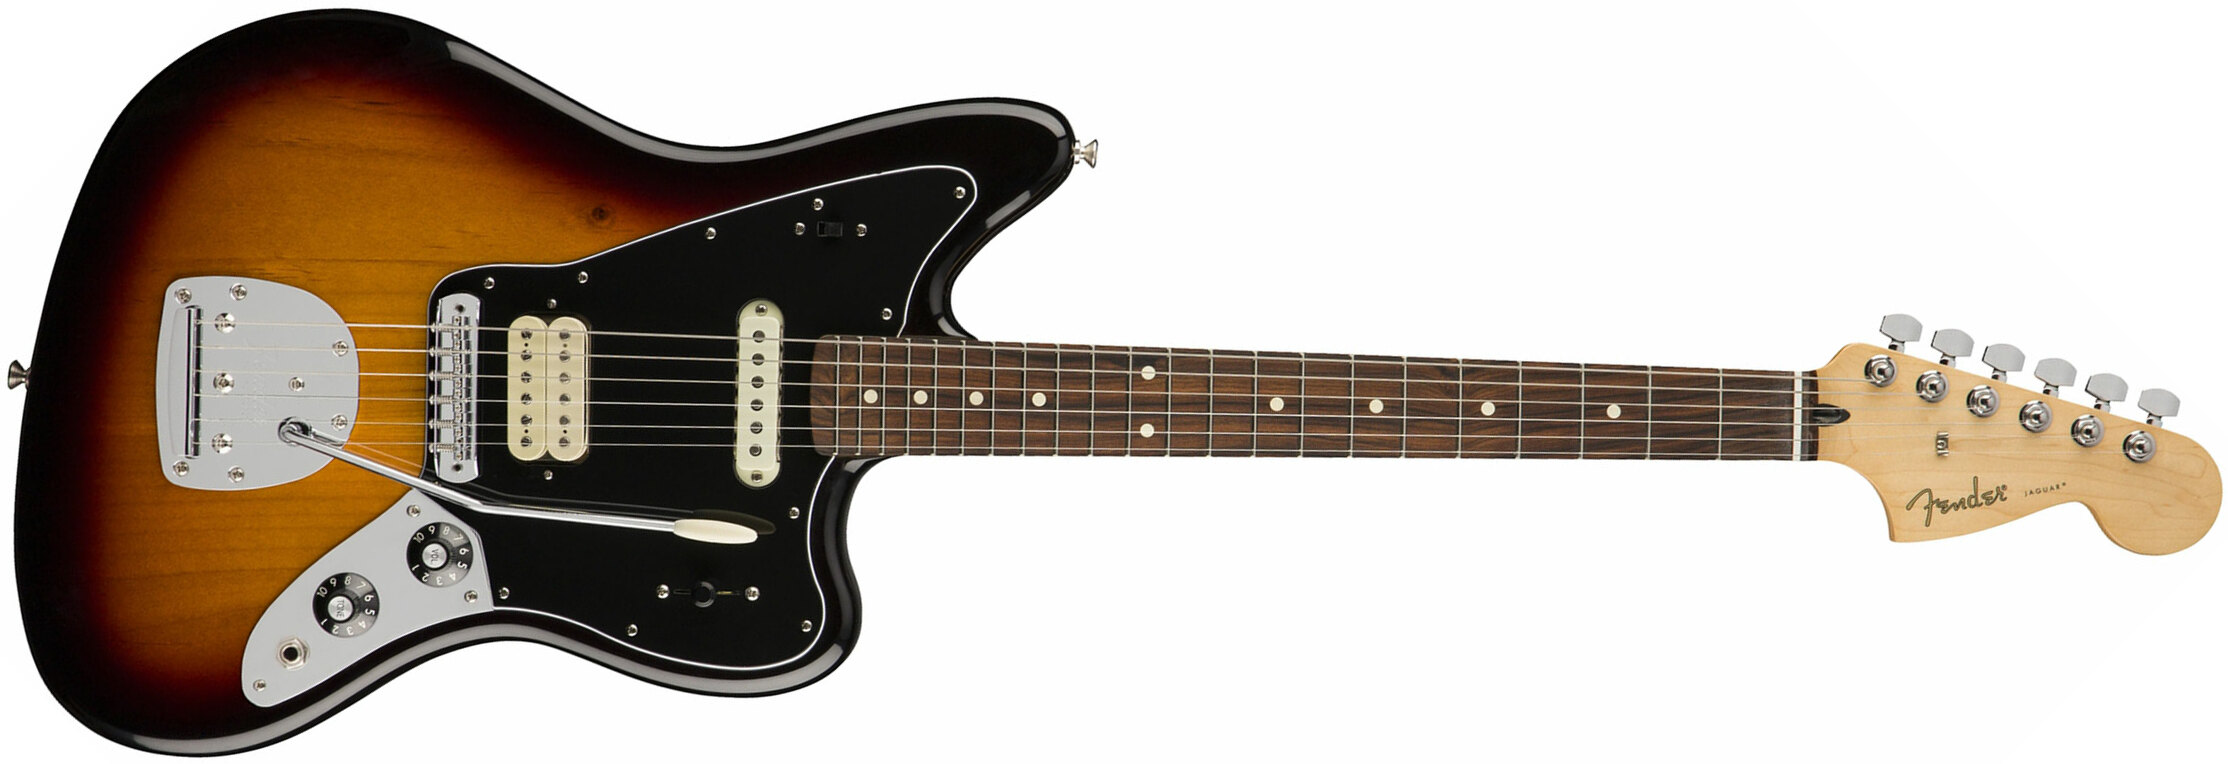 Fender Jaguar Player Mex Hs Pf - 3-color Sunburst - Retro-Rock-E-Gitarre - Main picture